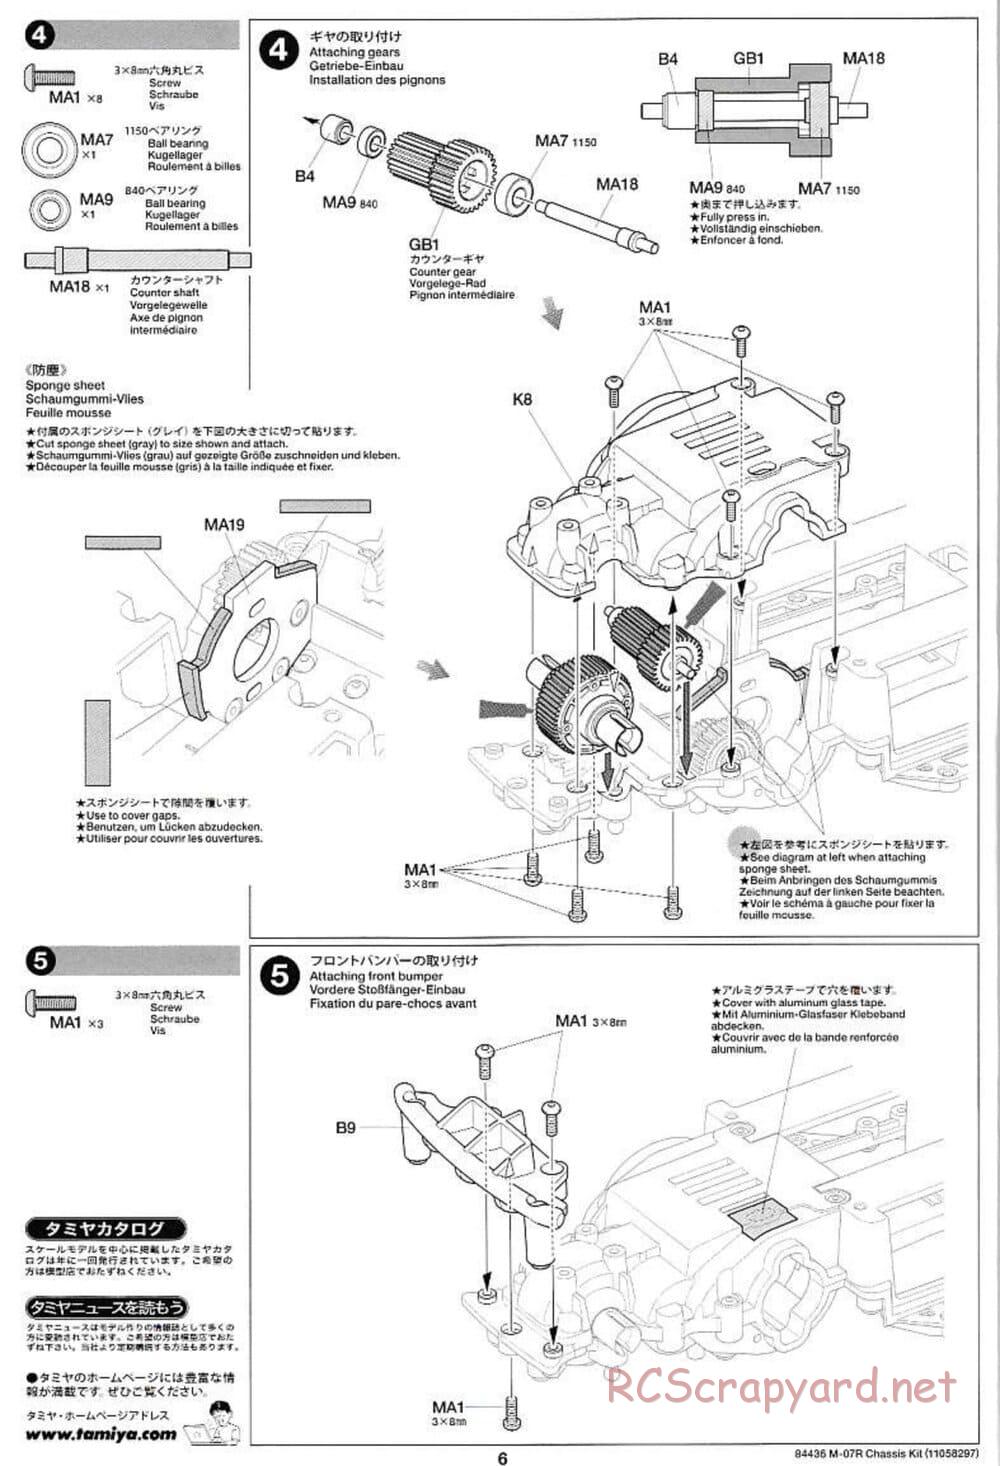 Tamiya - M-07R Chassis - Manual - Page 6